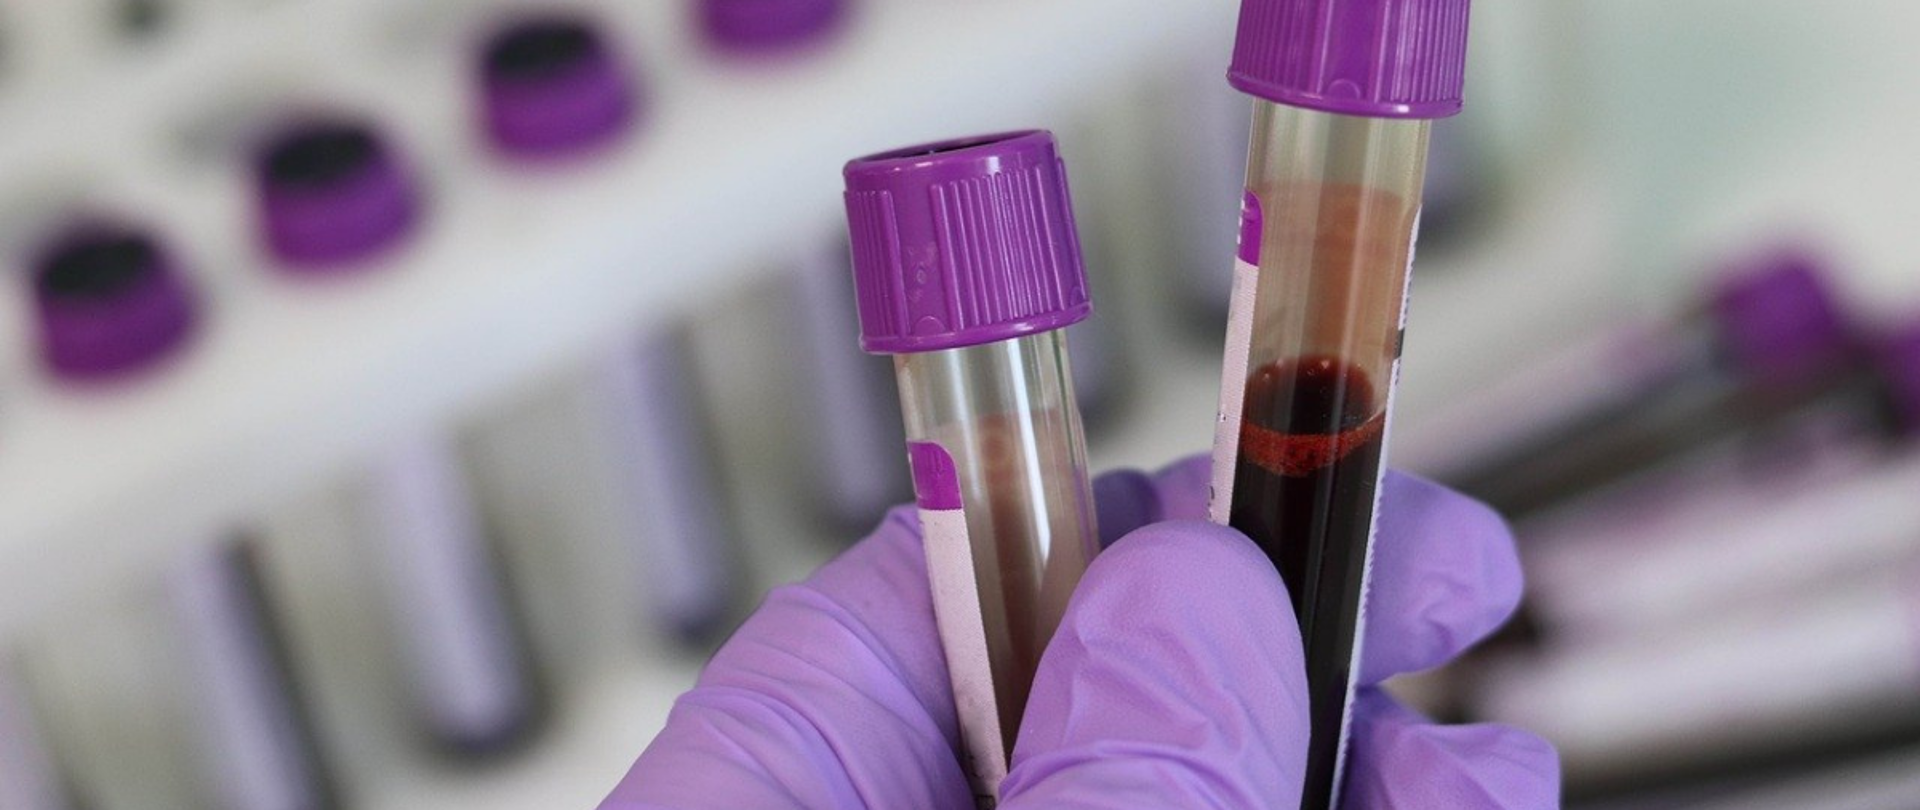 Krew trzymana w laboratoryjnych probówkach